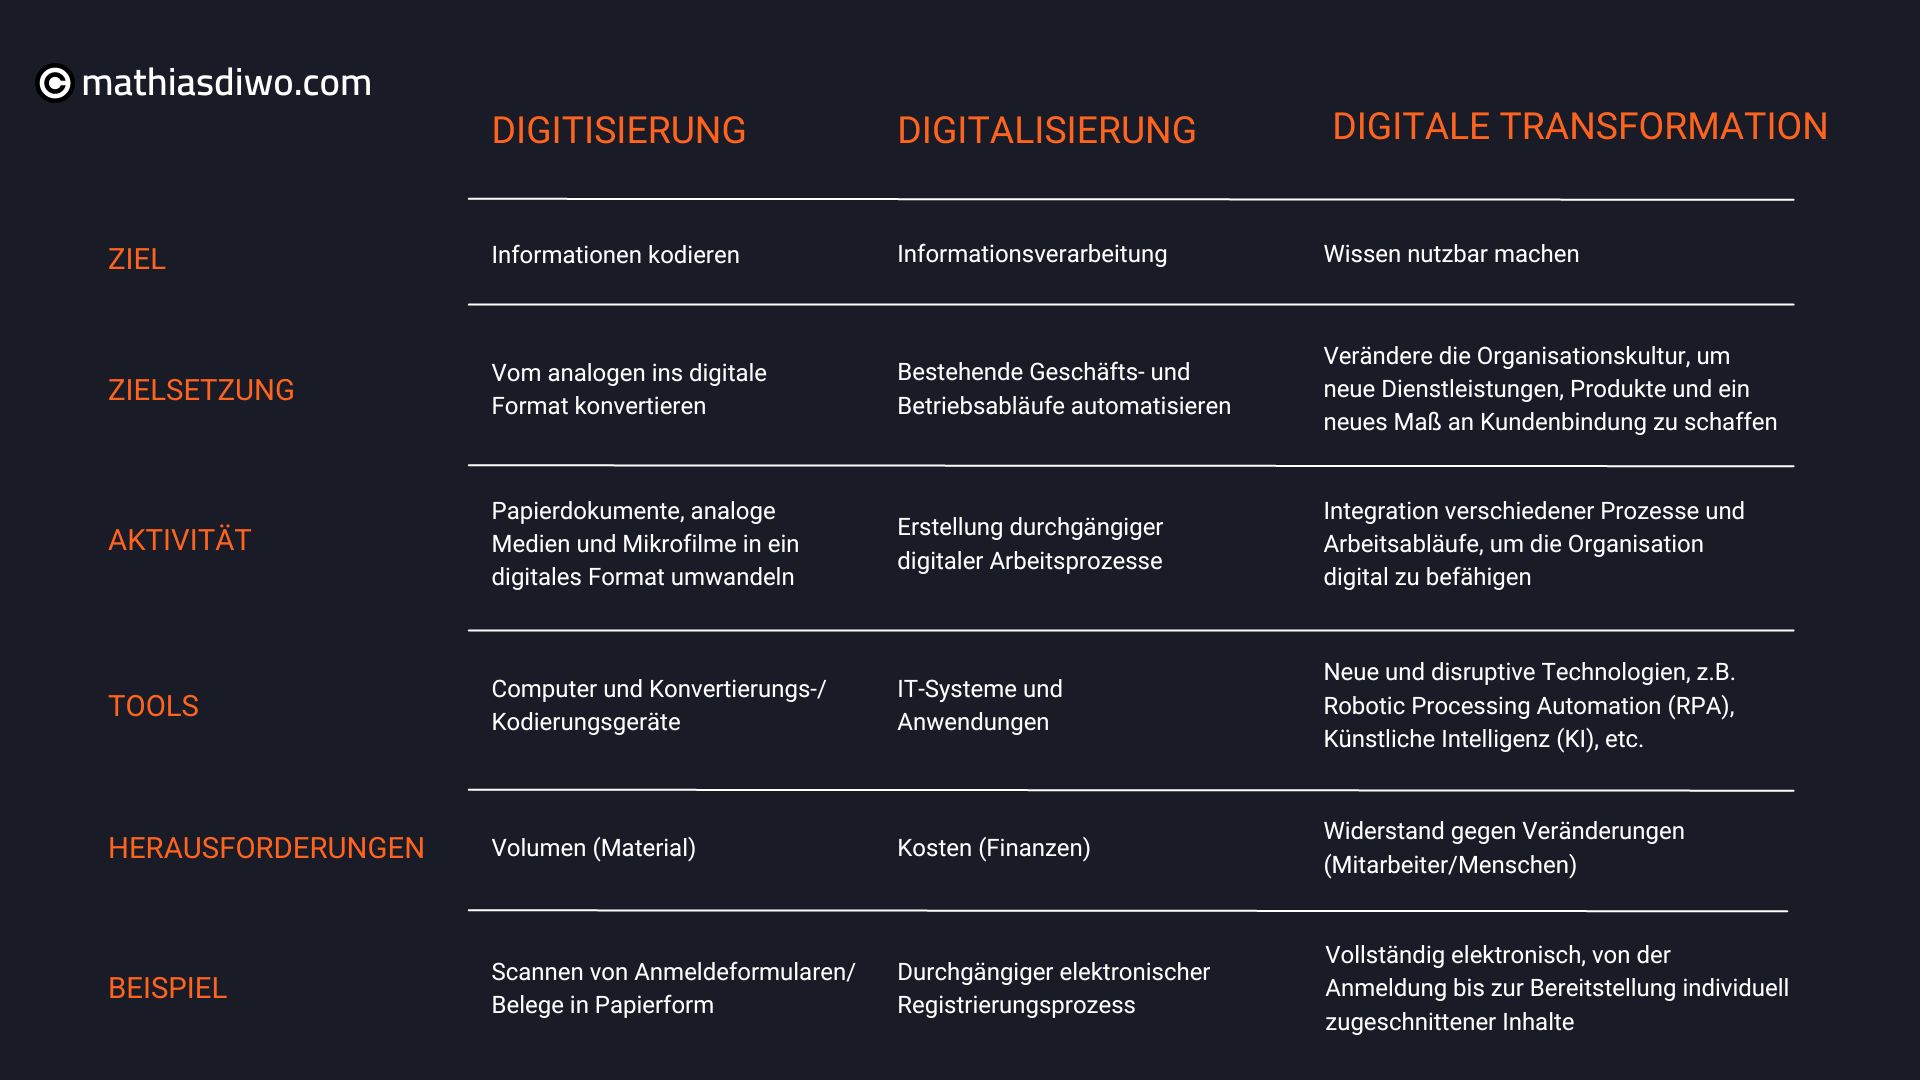 Digitisierung, Digitalisierung und Digitale Transformation Übersicht - Mathias Diwo (1)